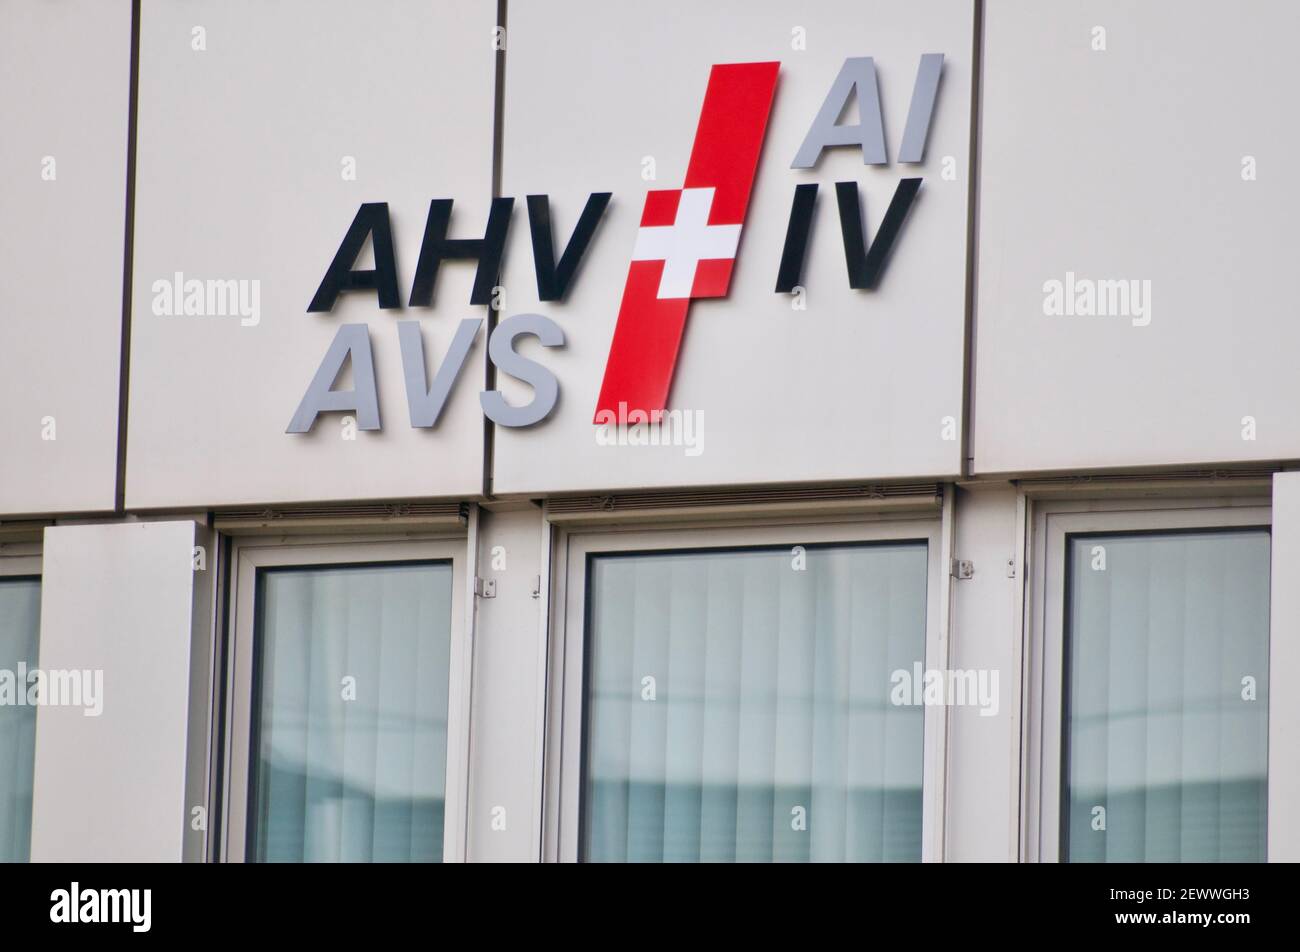 Zug, Svizzera - 26 febbraio 2021 : AHV AVS IV ai il logo svizzero della previdenza sociale e dell'invalidità appeso all'edificio degli uffici di Zug, Svizzera Foto Stock